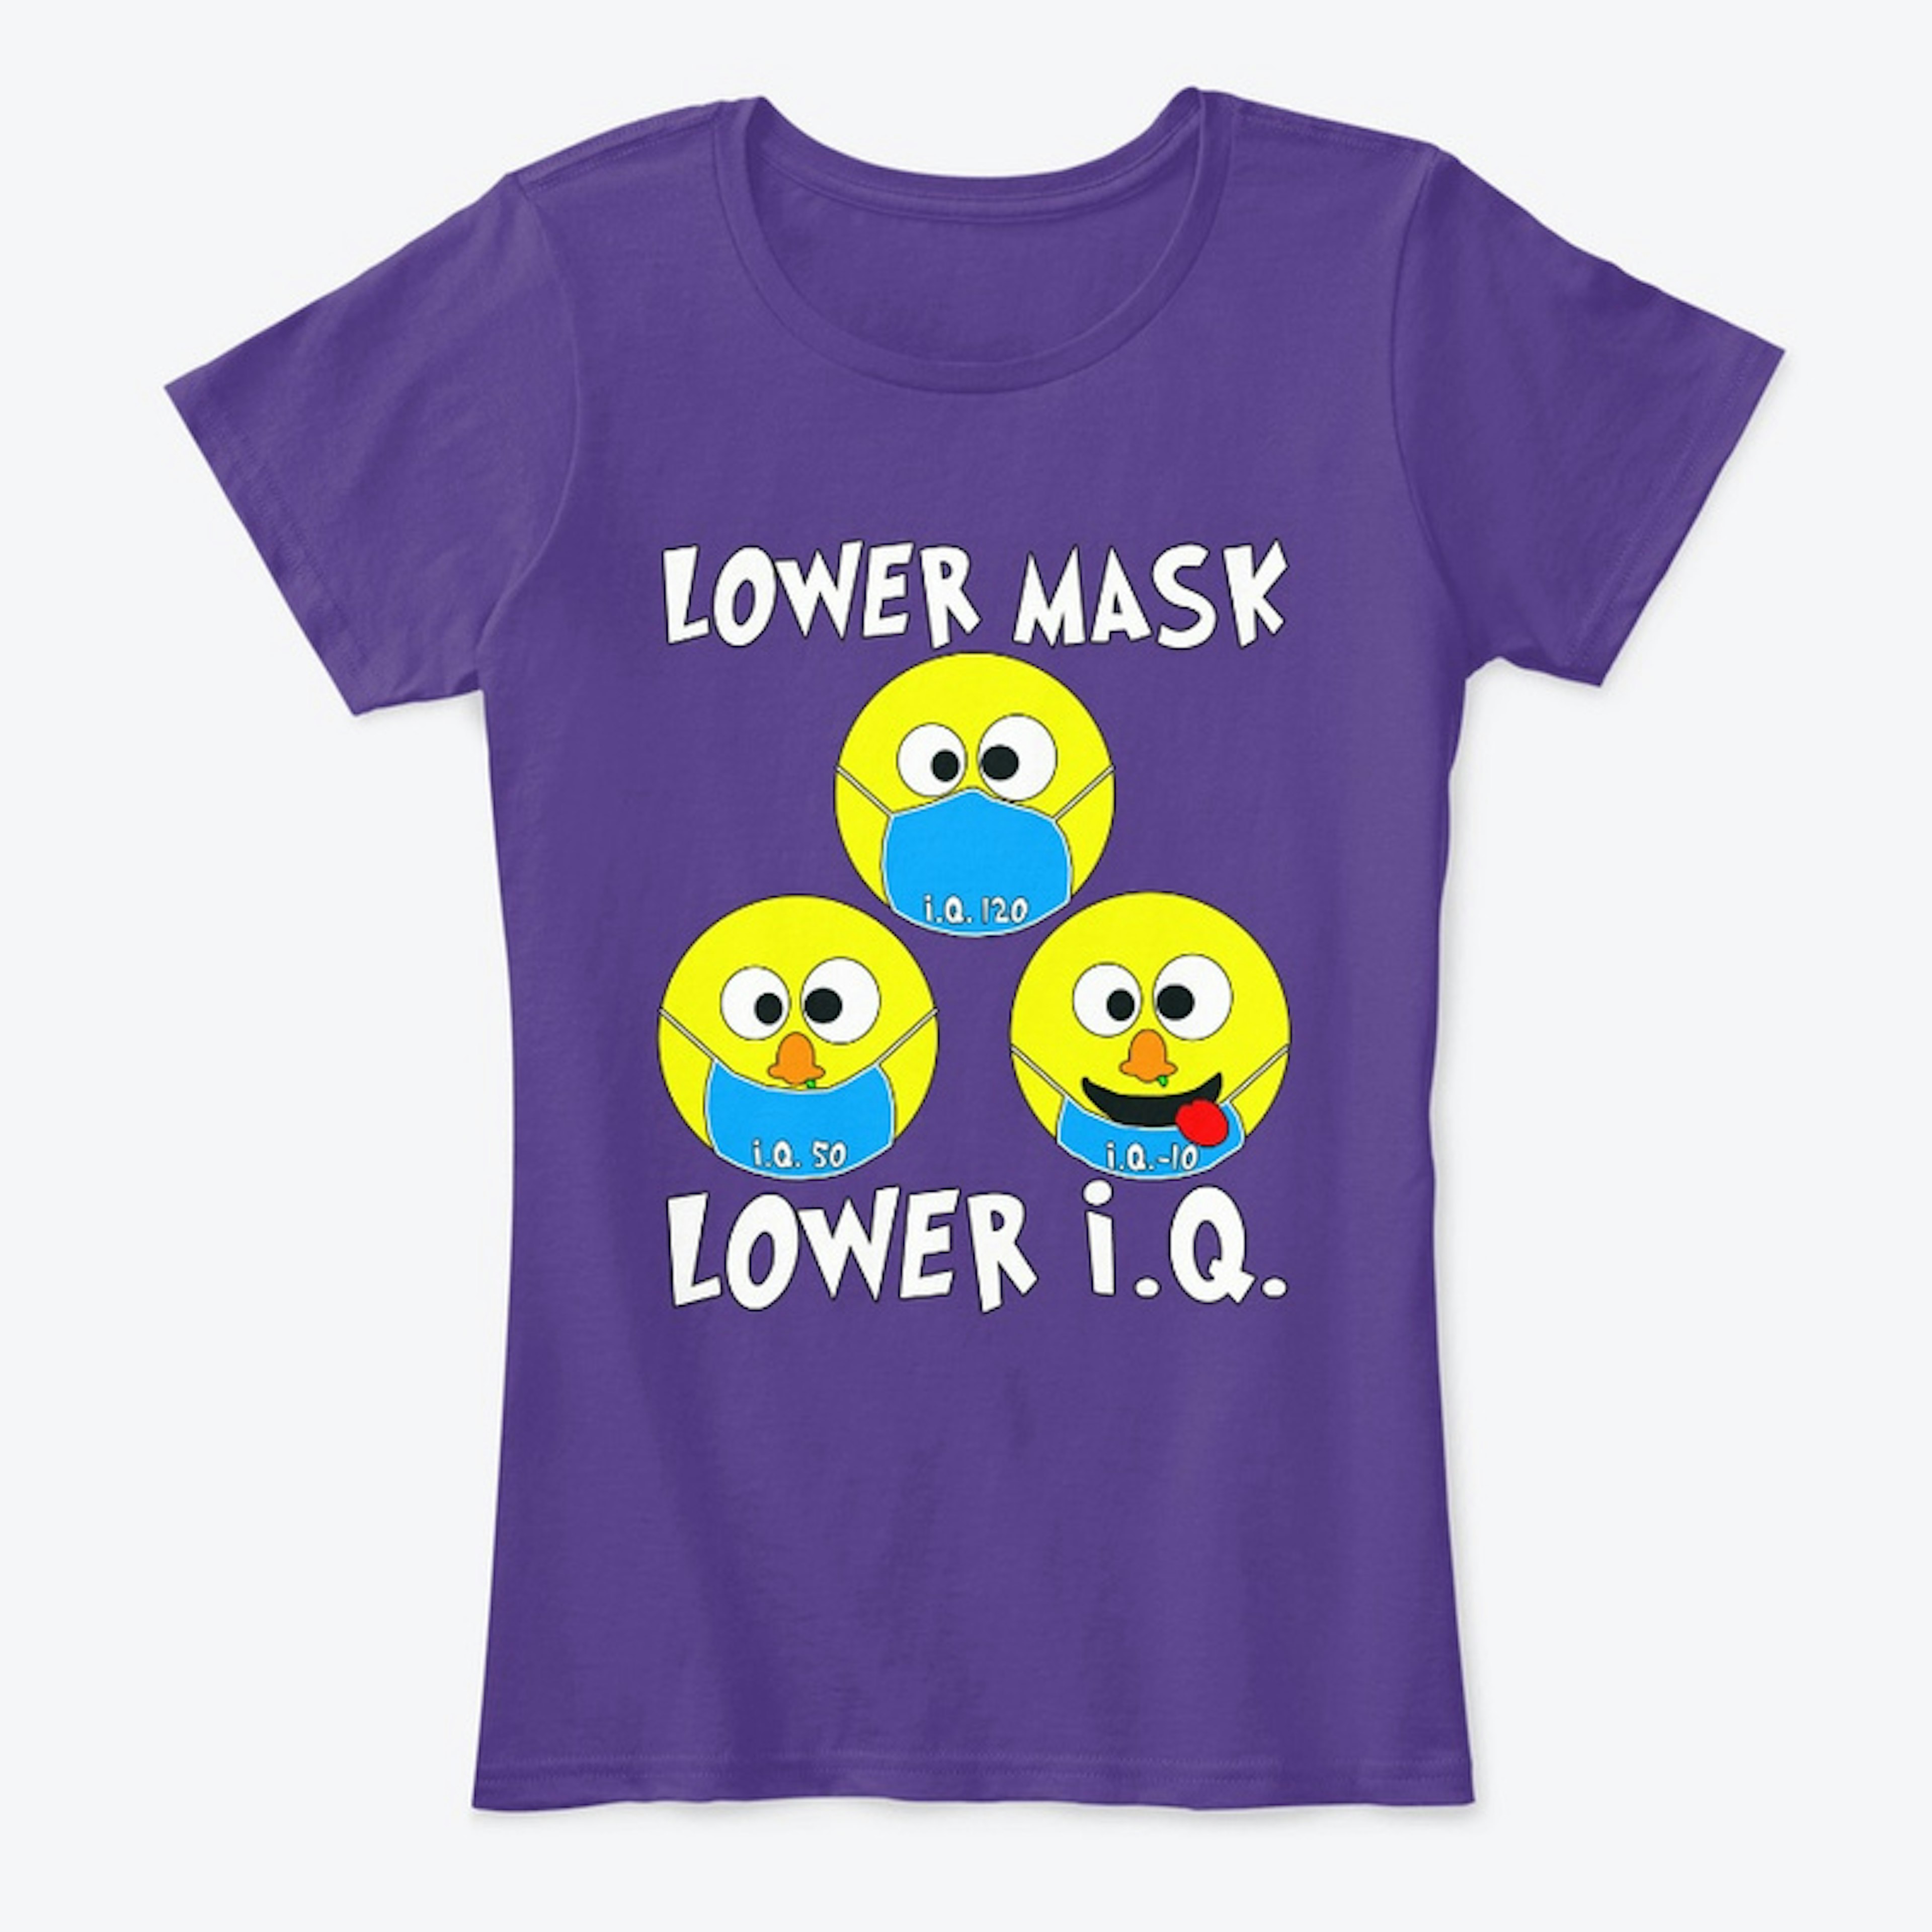 Lower Mask = Lower I.Q.